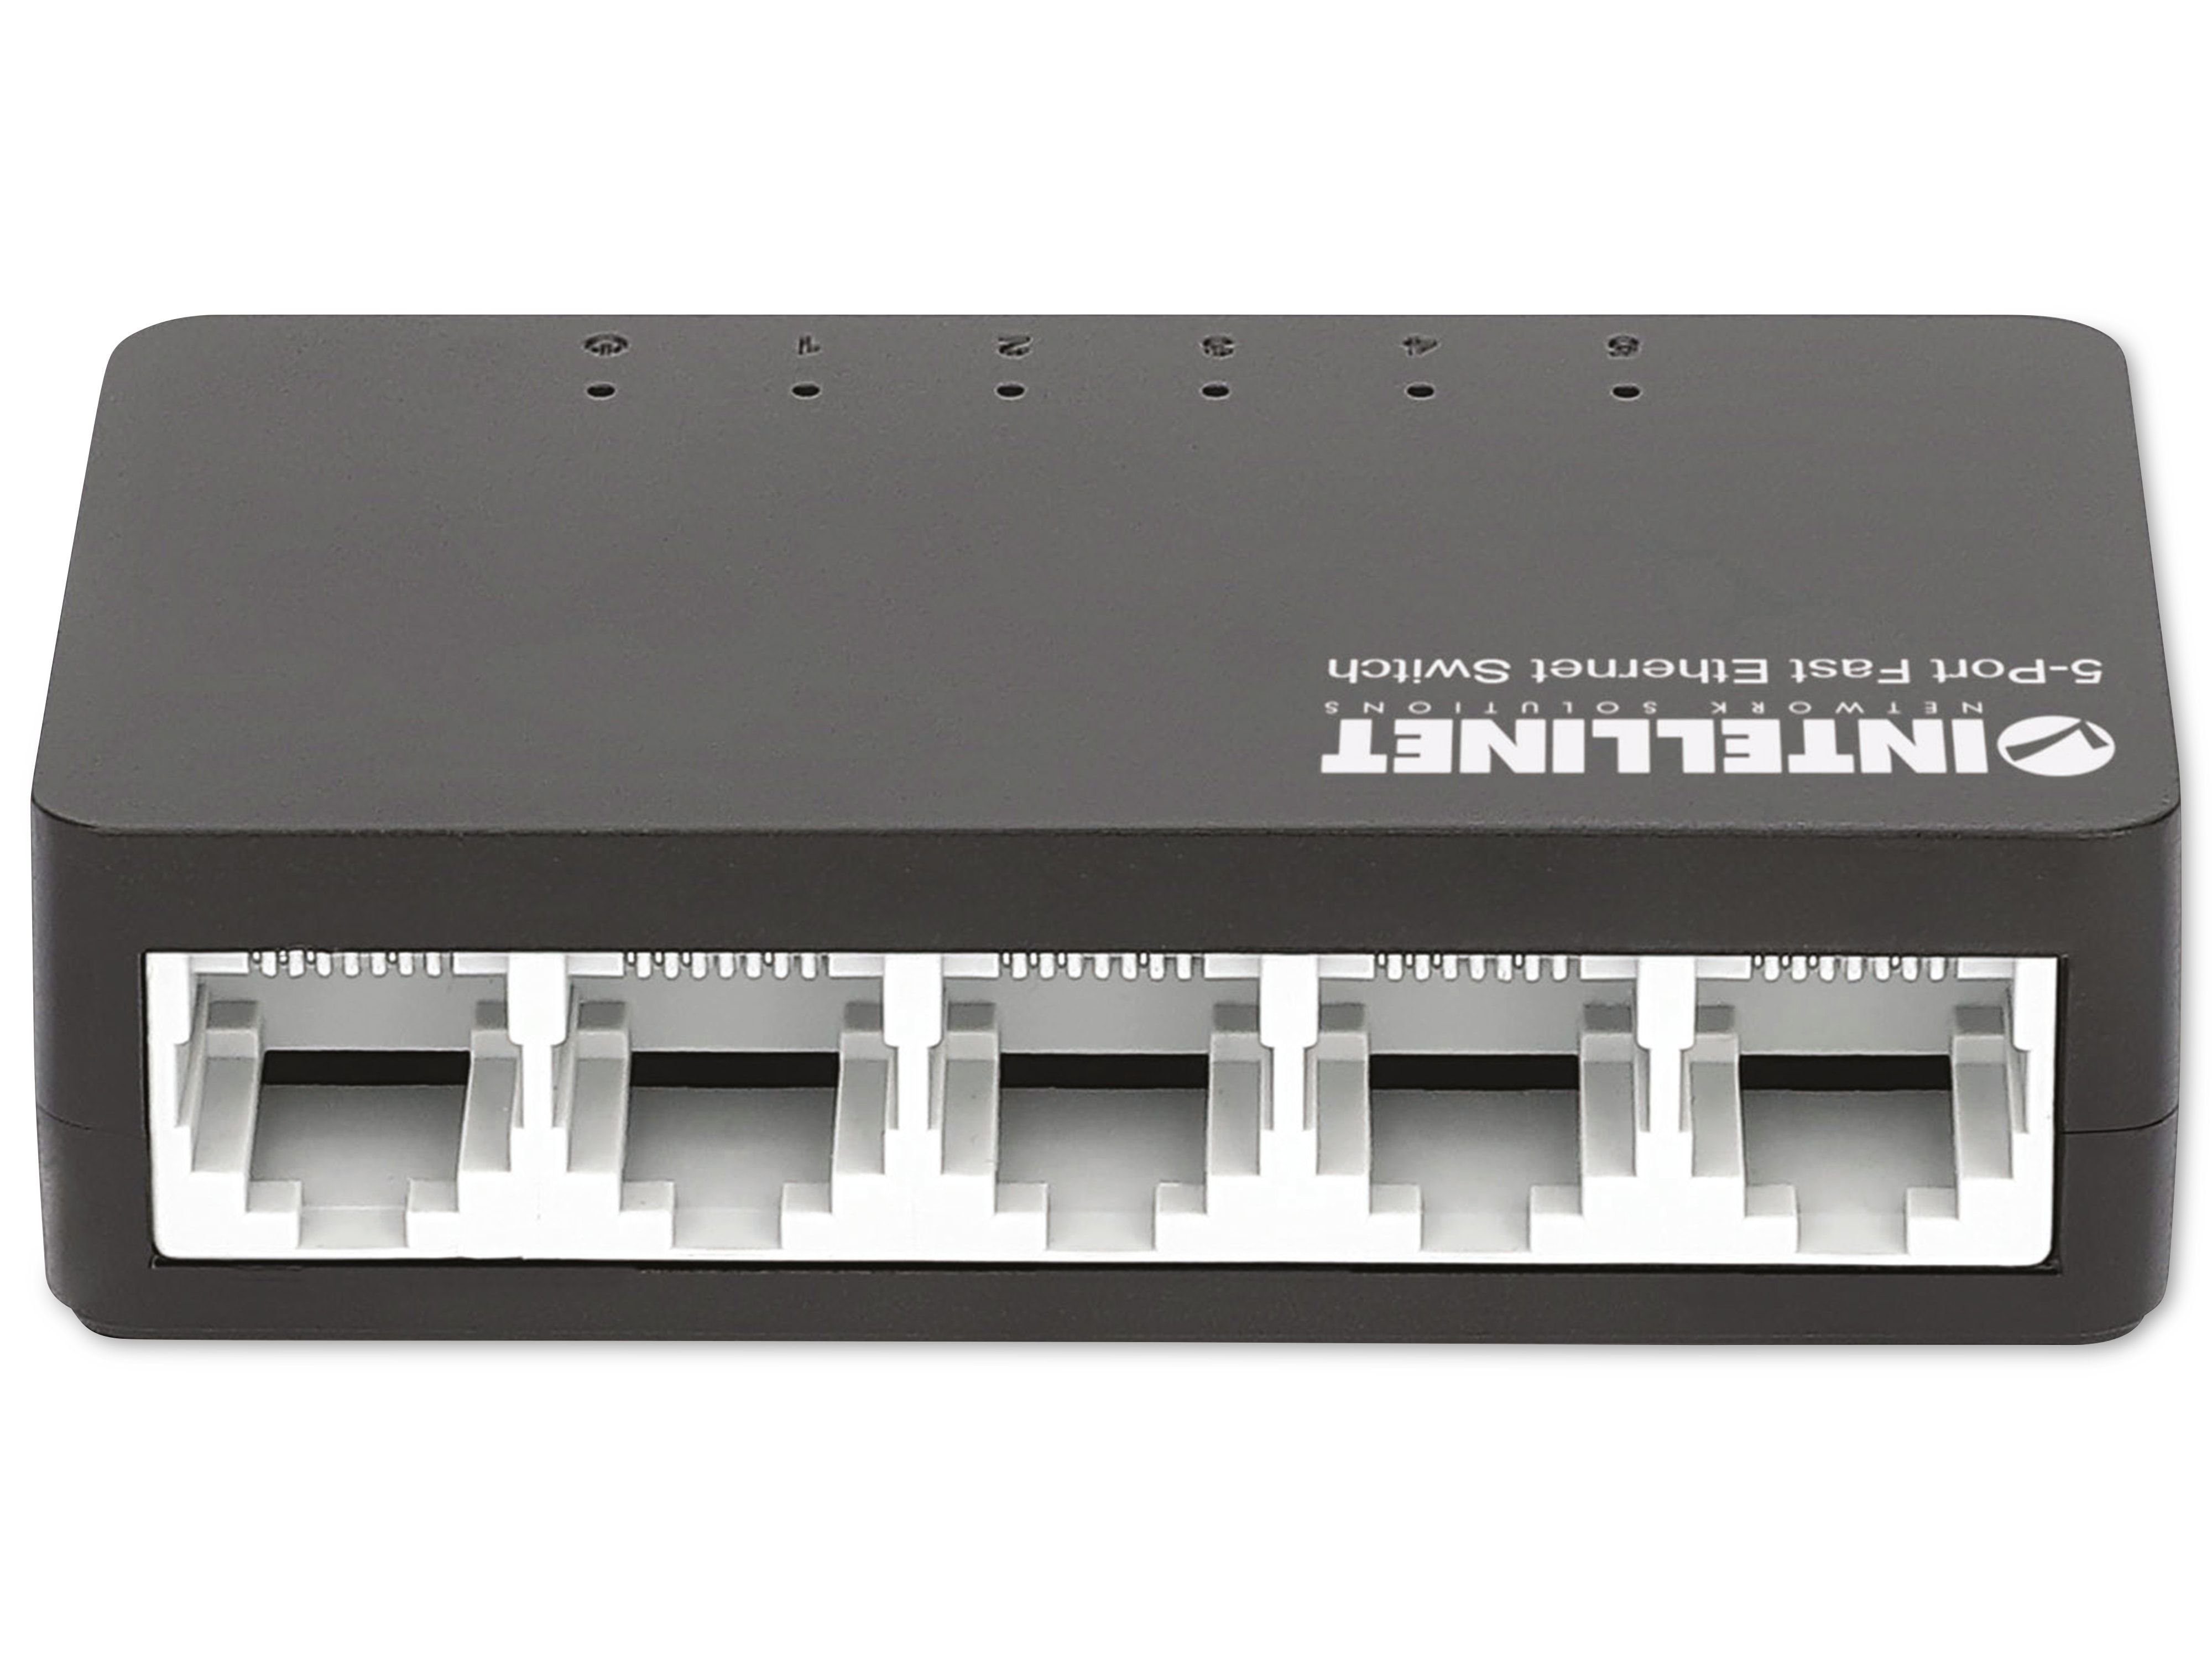 Netzwerk-Switch schwarz INTELLINET Intellinet 561723 5-Port, Switch Ethernet